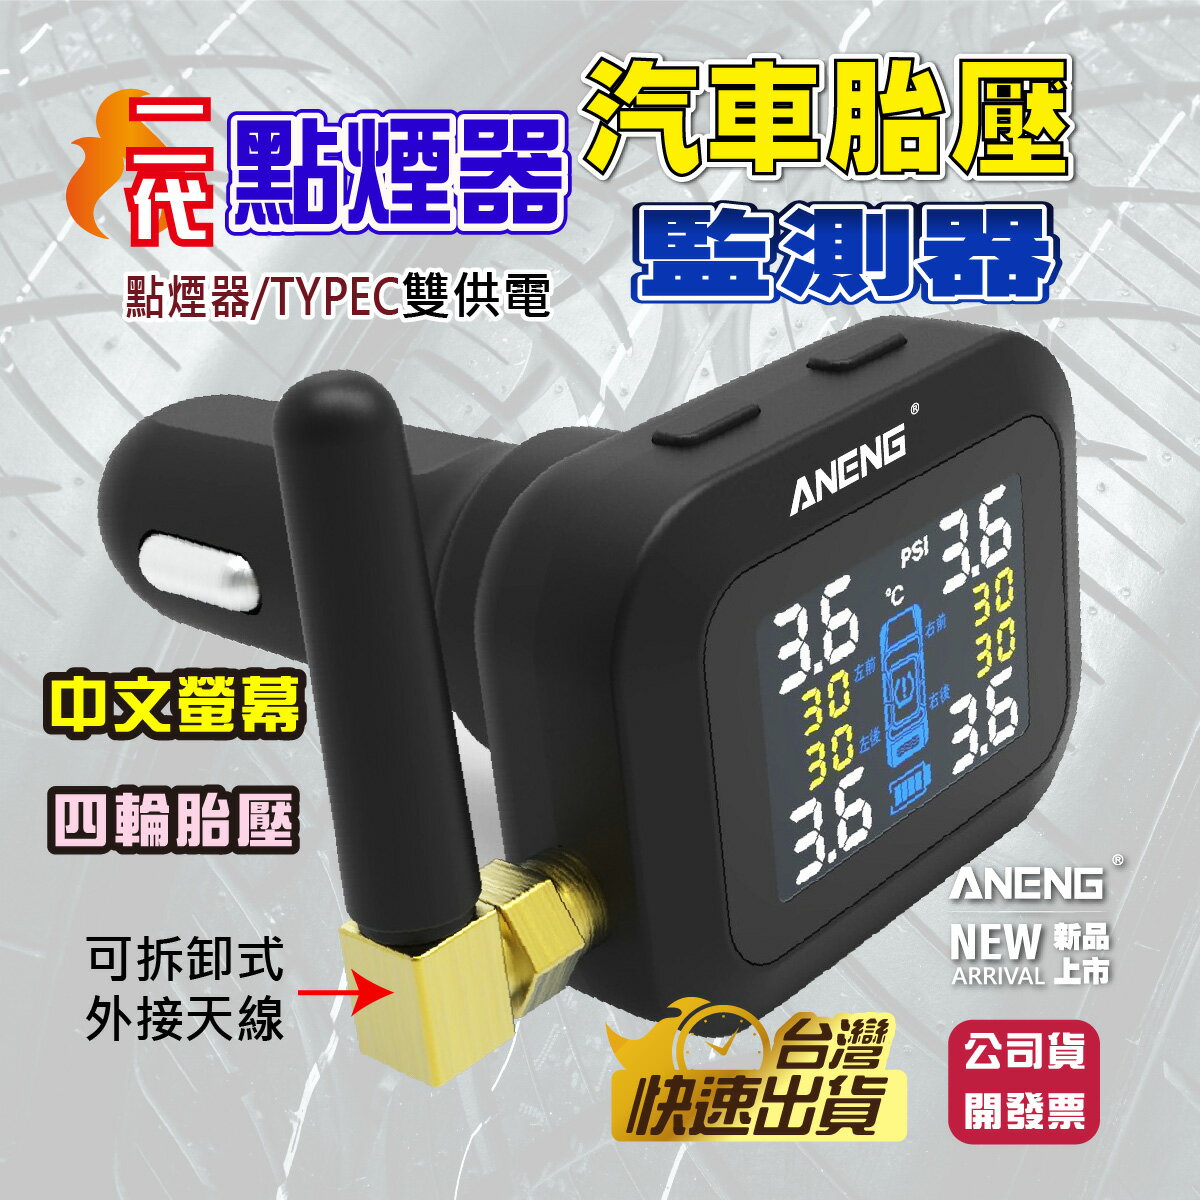 ANENG 台灣公司貨 一年保固 點菸器胎壓偵測器 點菸器無線胎壓偵測器 防水設計 汽車胎壓偵測器 車充胎壓偵測